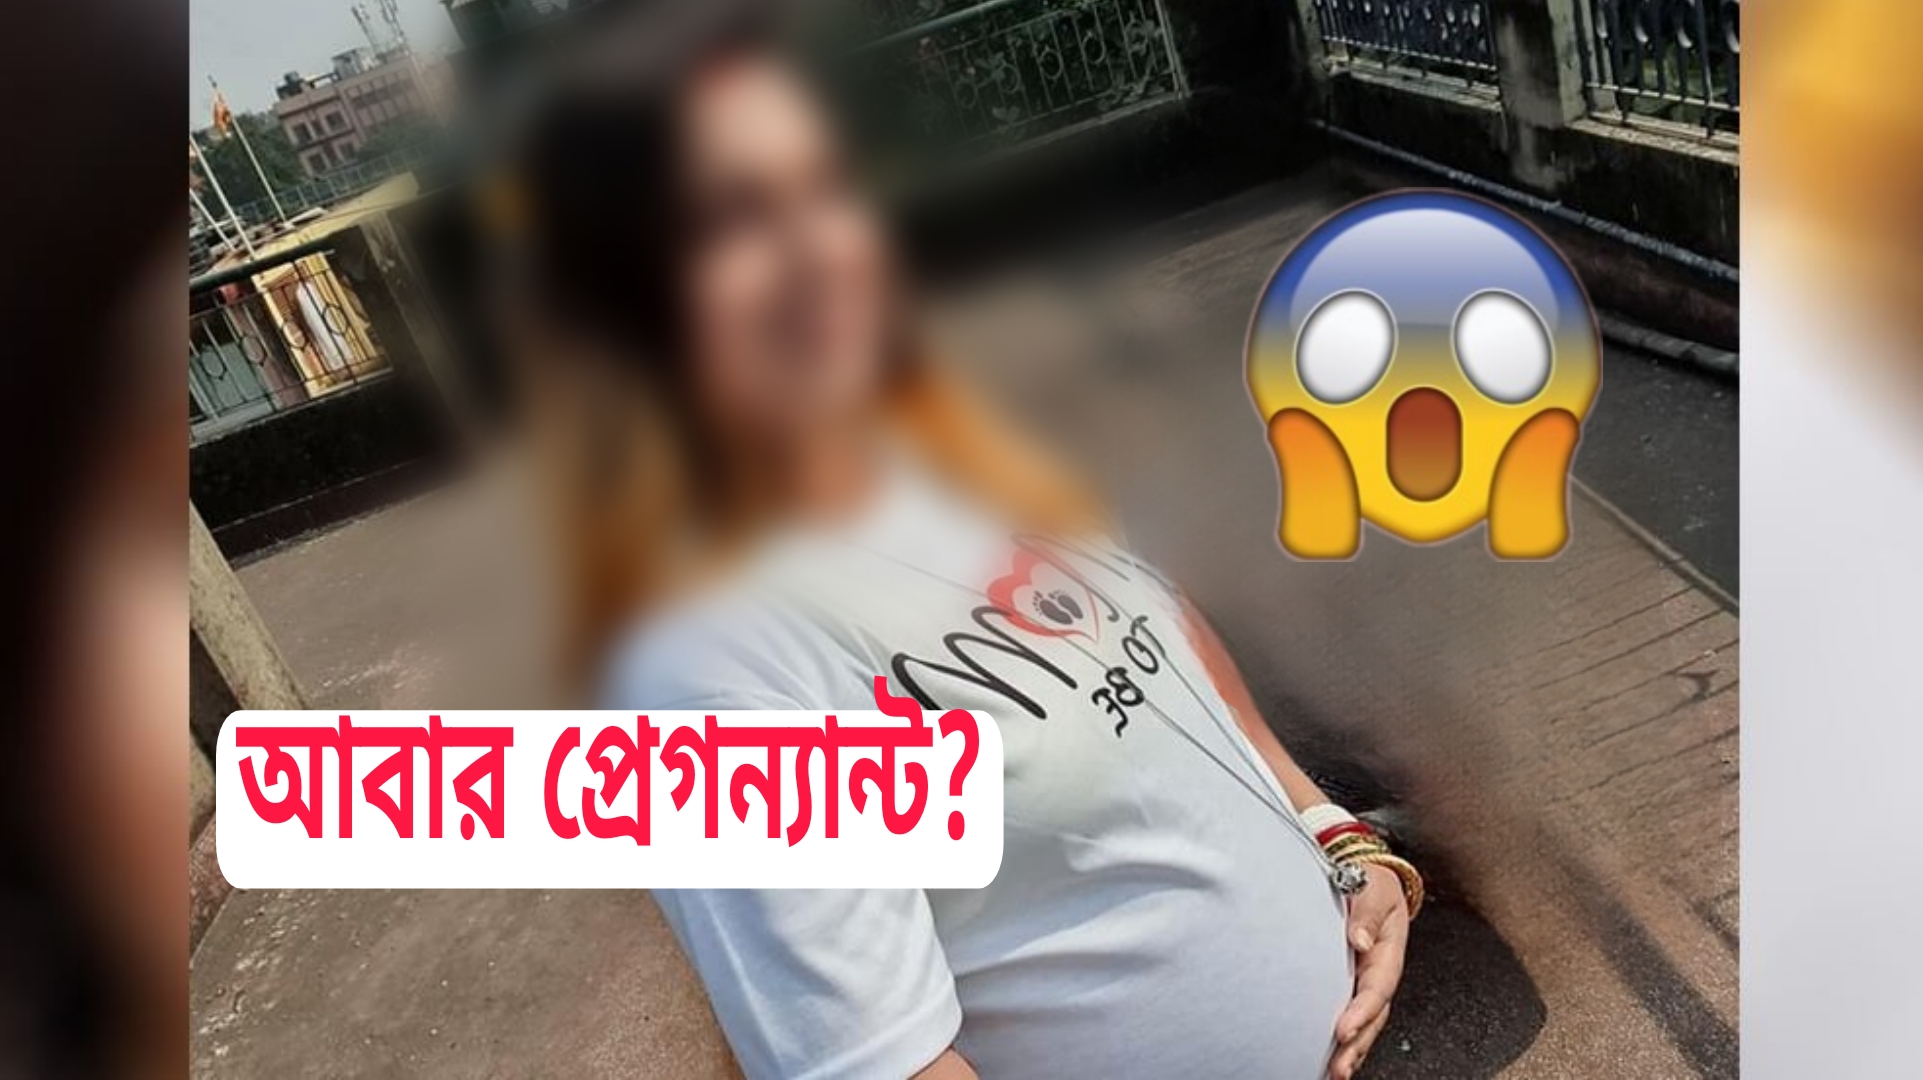 Madhubani again pregnant